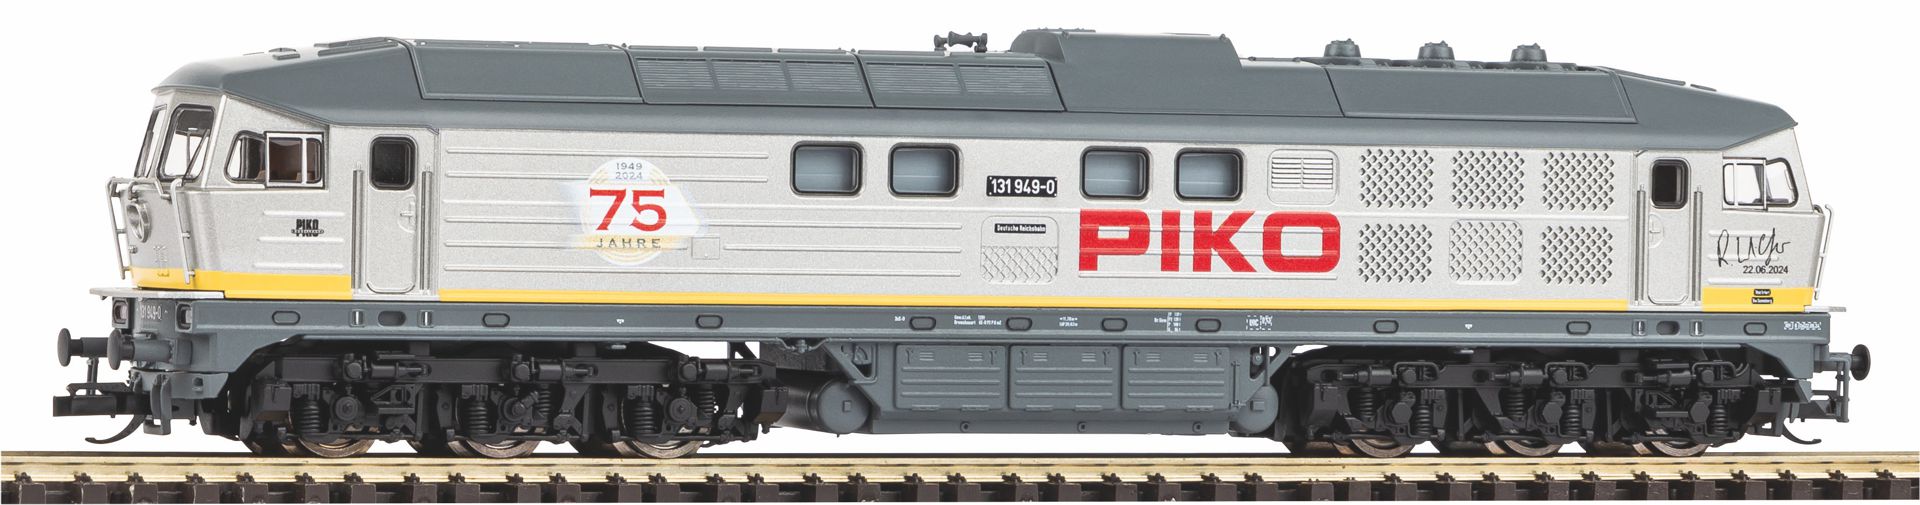 Piko 47330 - Diesellok BR 131 im Überraschungsdesign 'Piko Jubiläum'